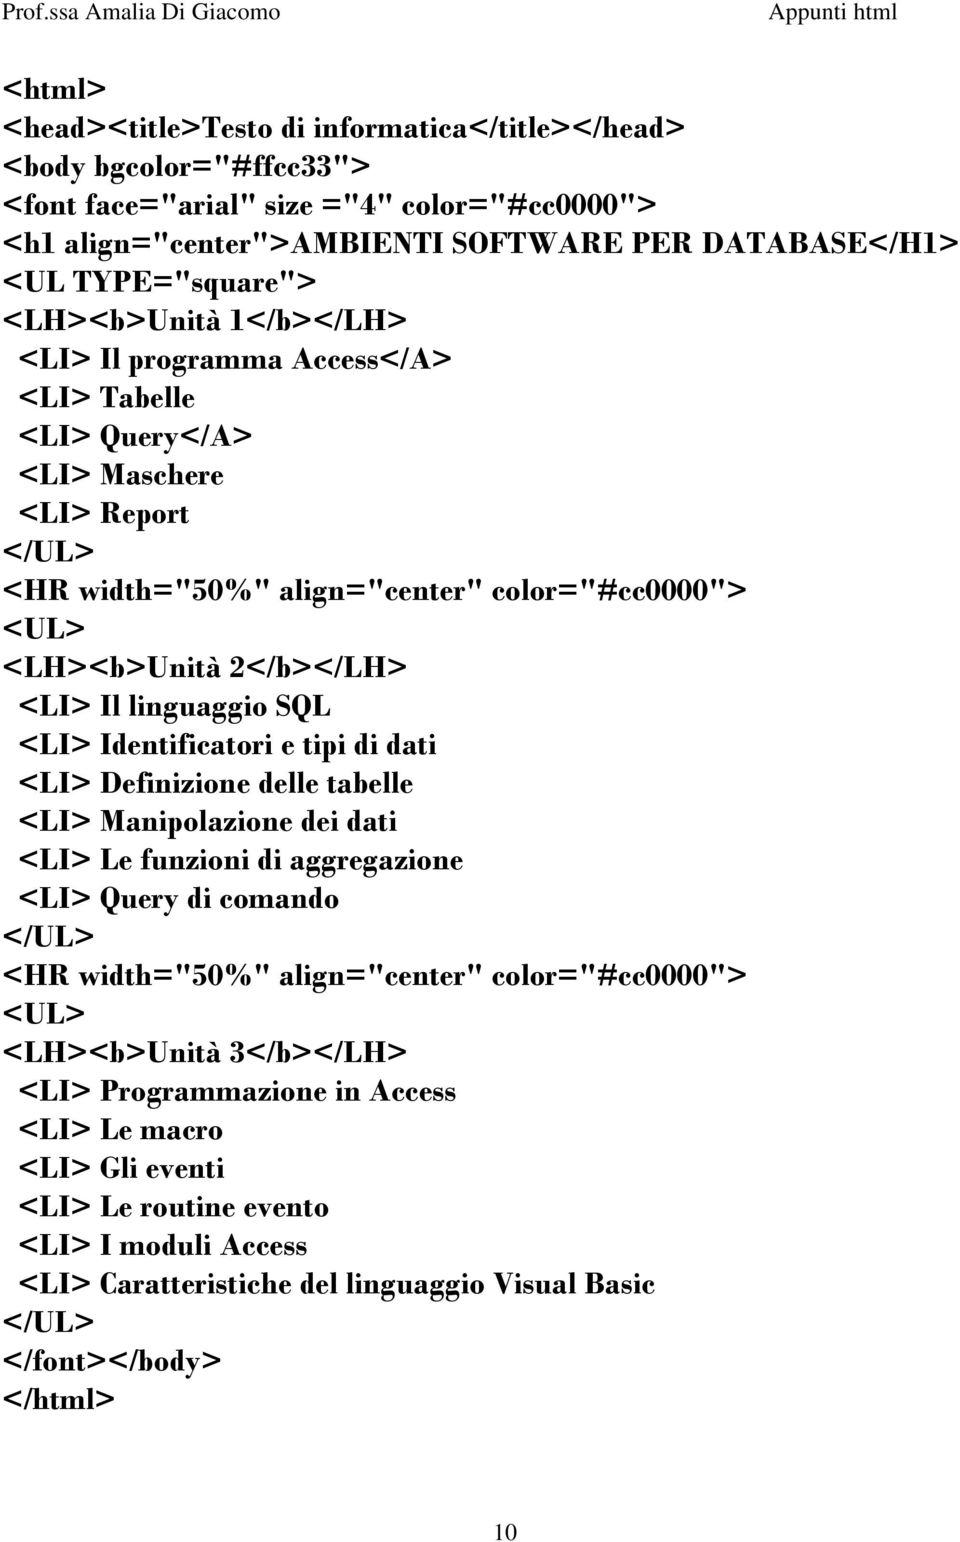 2</b></LH> <LI> Il linguaggio SQL <LI> Identificatori e tipi di dati <LI> Definizione delle tabelle <LI> Manipolazione dei dati <LI> Le funzioni di aggregazione <LI> Query di comando </UL> <HR